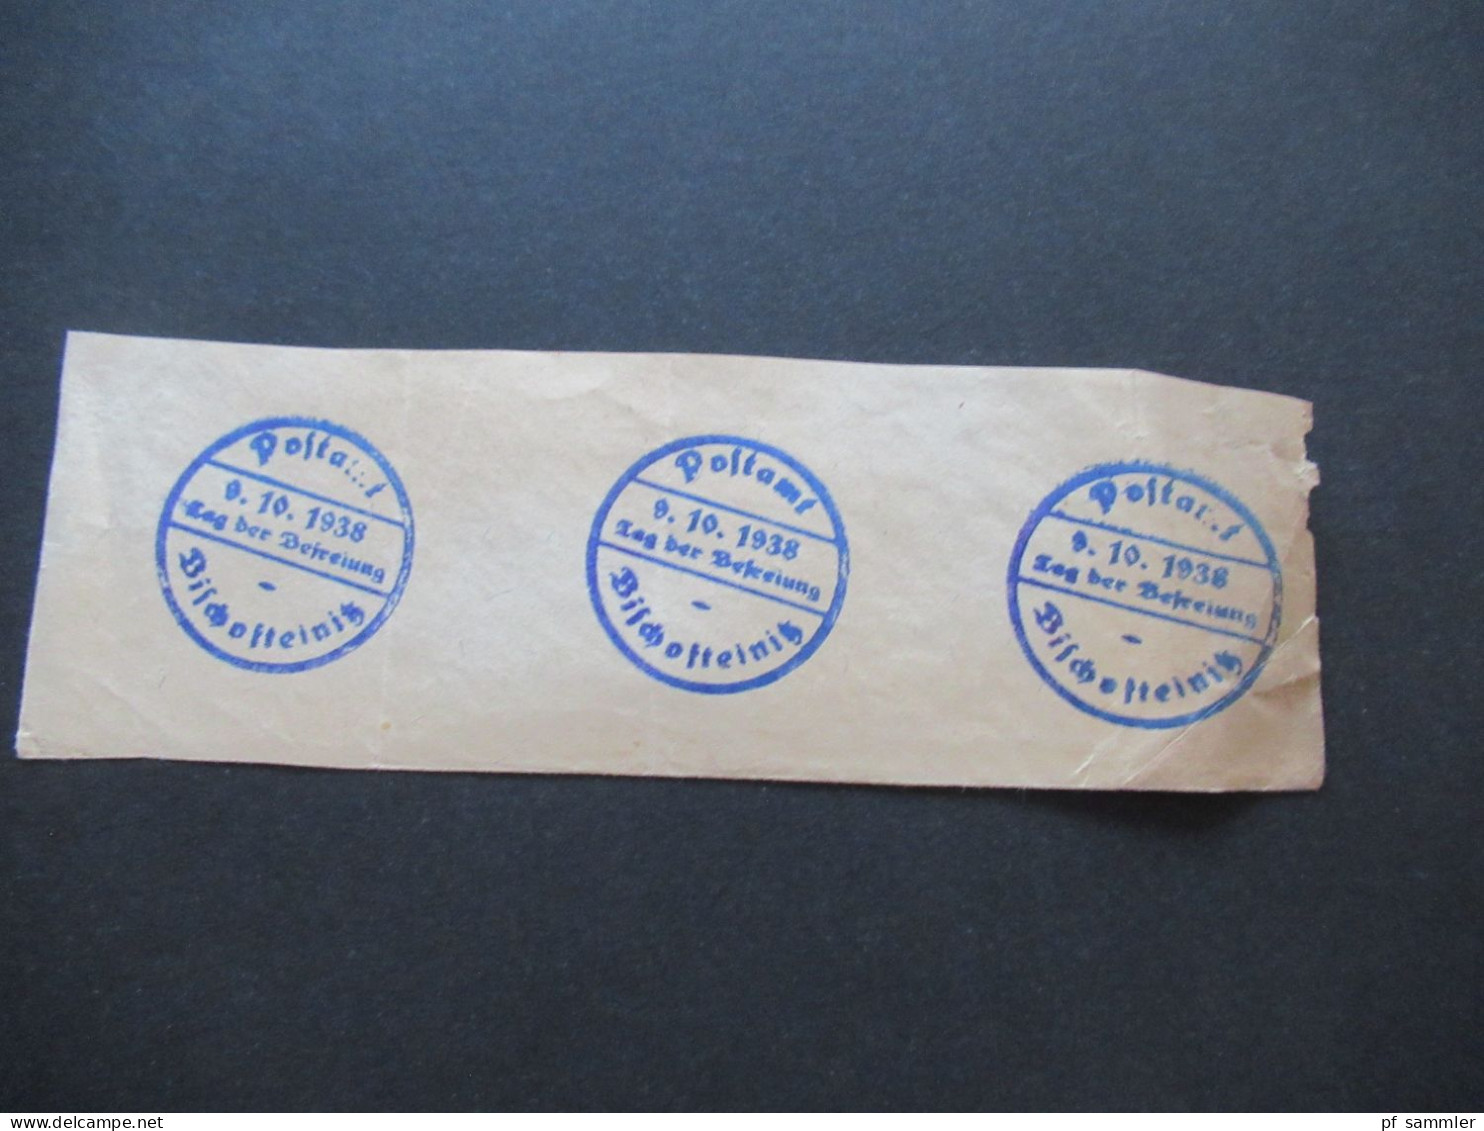 3.Reich Sudetenland Briefstück Mit Befreiungsstempel Postamt Bischofteinitz Sudetenland Tag Der Befreiung 9.10.1938 - Sudetenland